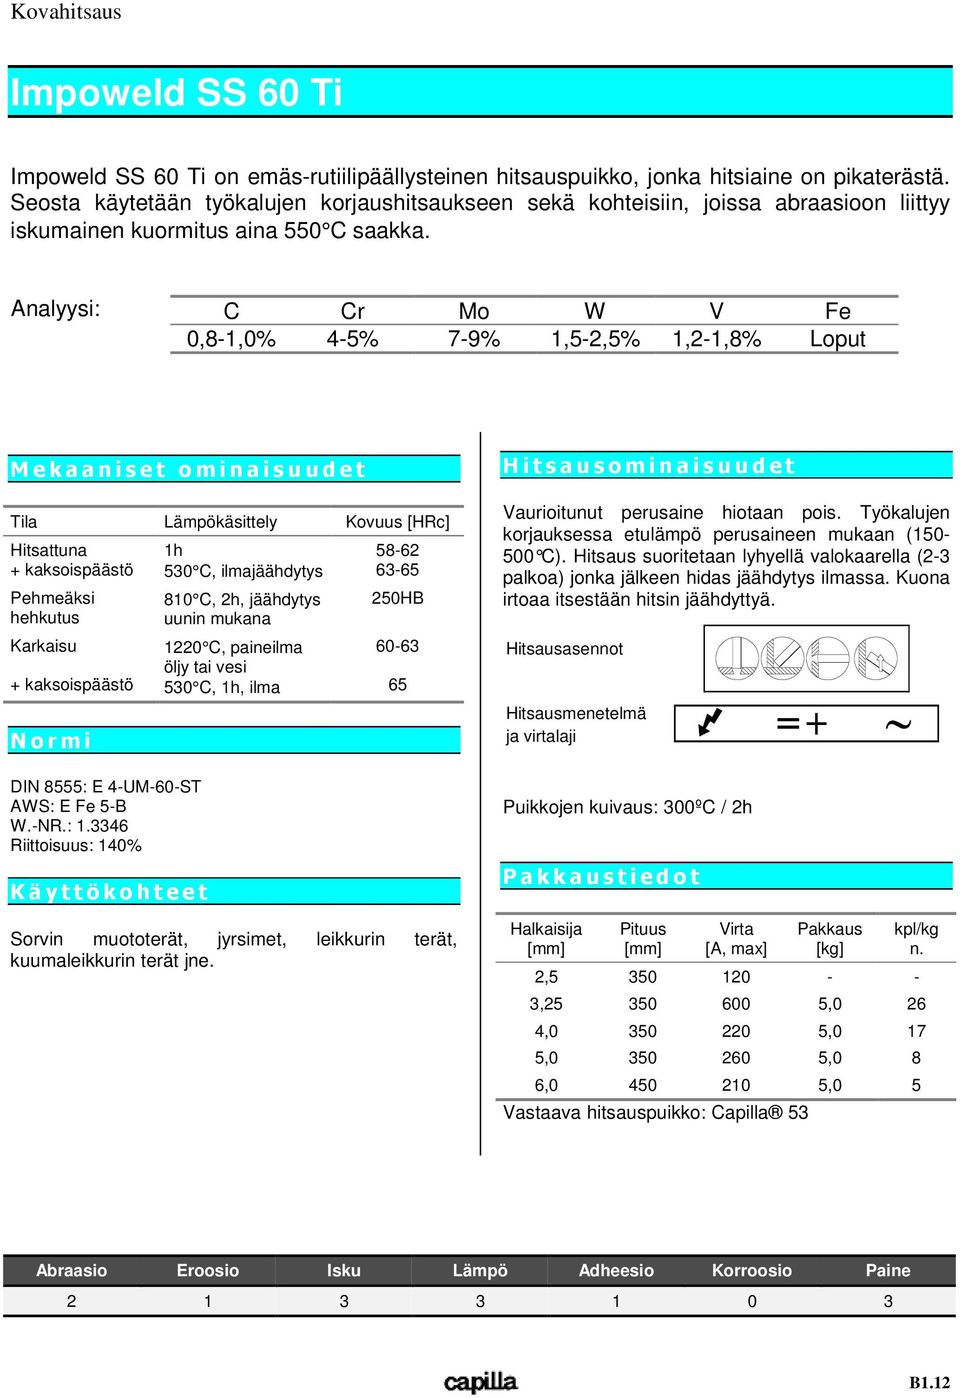 Analyysi: C Cr Mo W V Fe 0,8-1,0% 4-5% 7-9% 1,5-2,5% 1,2-1,8% Loput Tila Lämpökäsittely Kovuus [HRc] Hitsattuna + kaksoispäästö Pehmeäksi hehkutus Karkaisu + kaksoispäästö DIN 8555: E 4-UM-60-ST AWS: